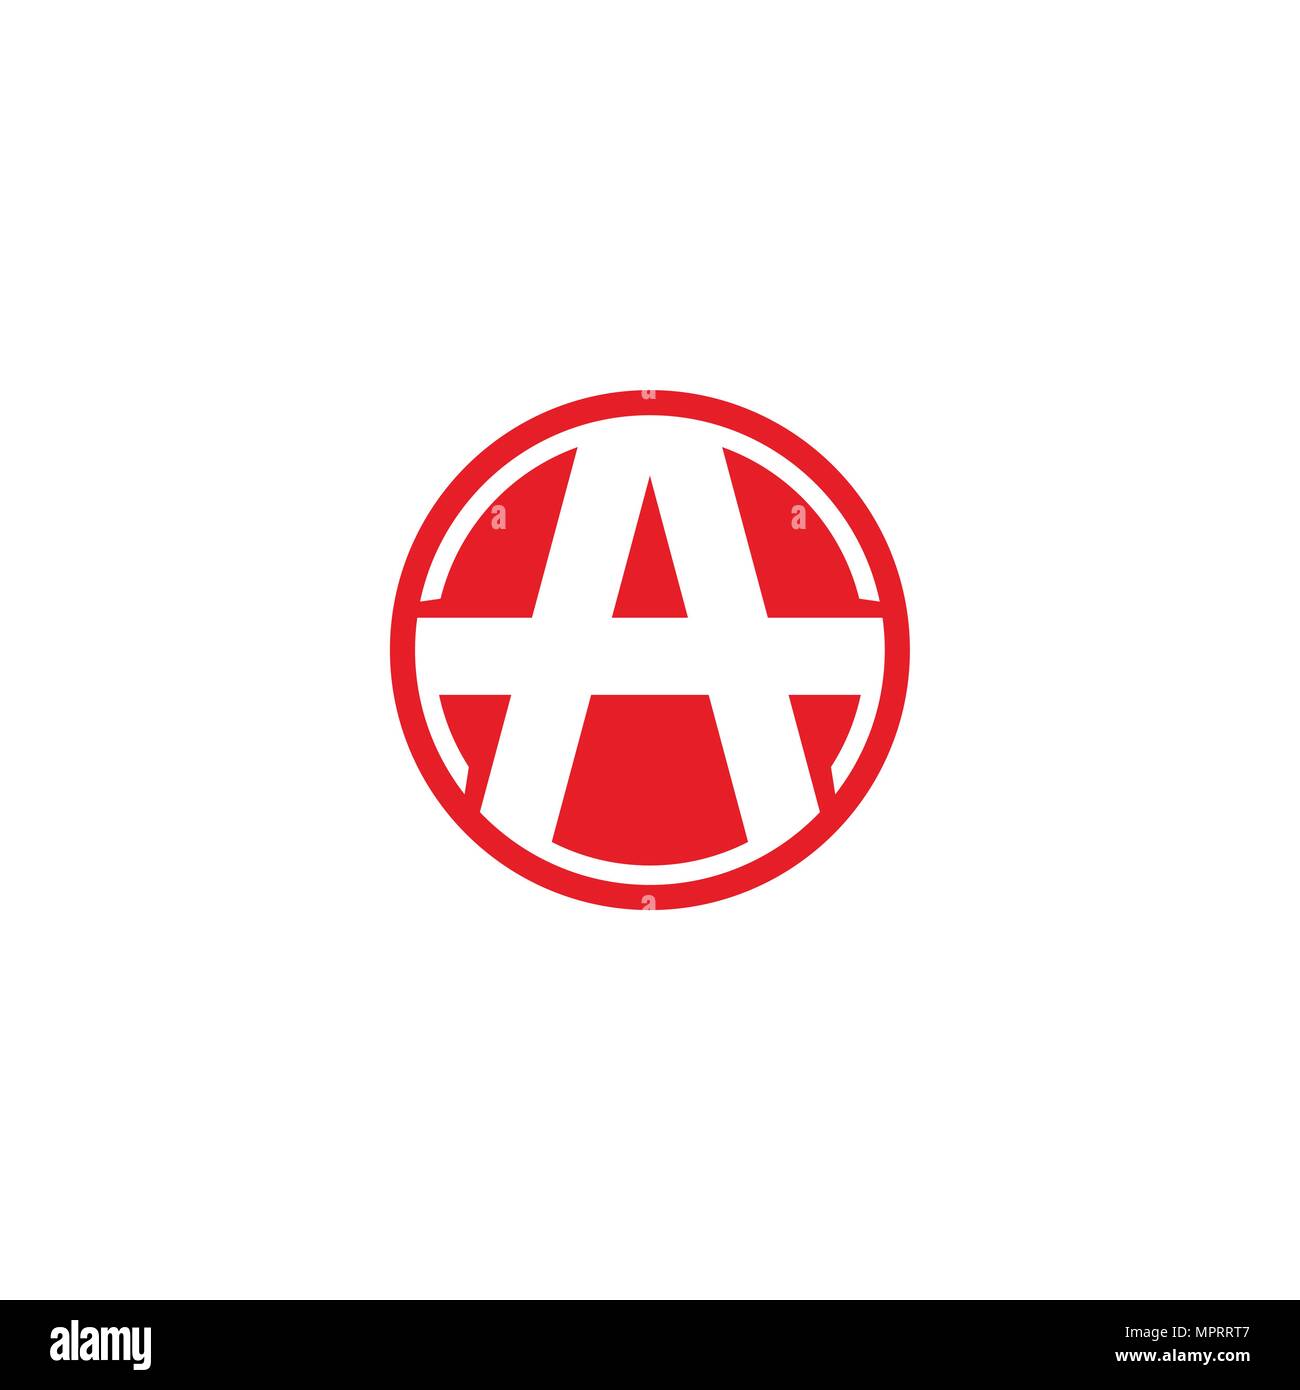 Una carta de logotipo, con diseño circular de color rojo. Ilustración del Vector